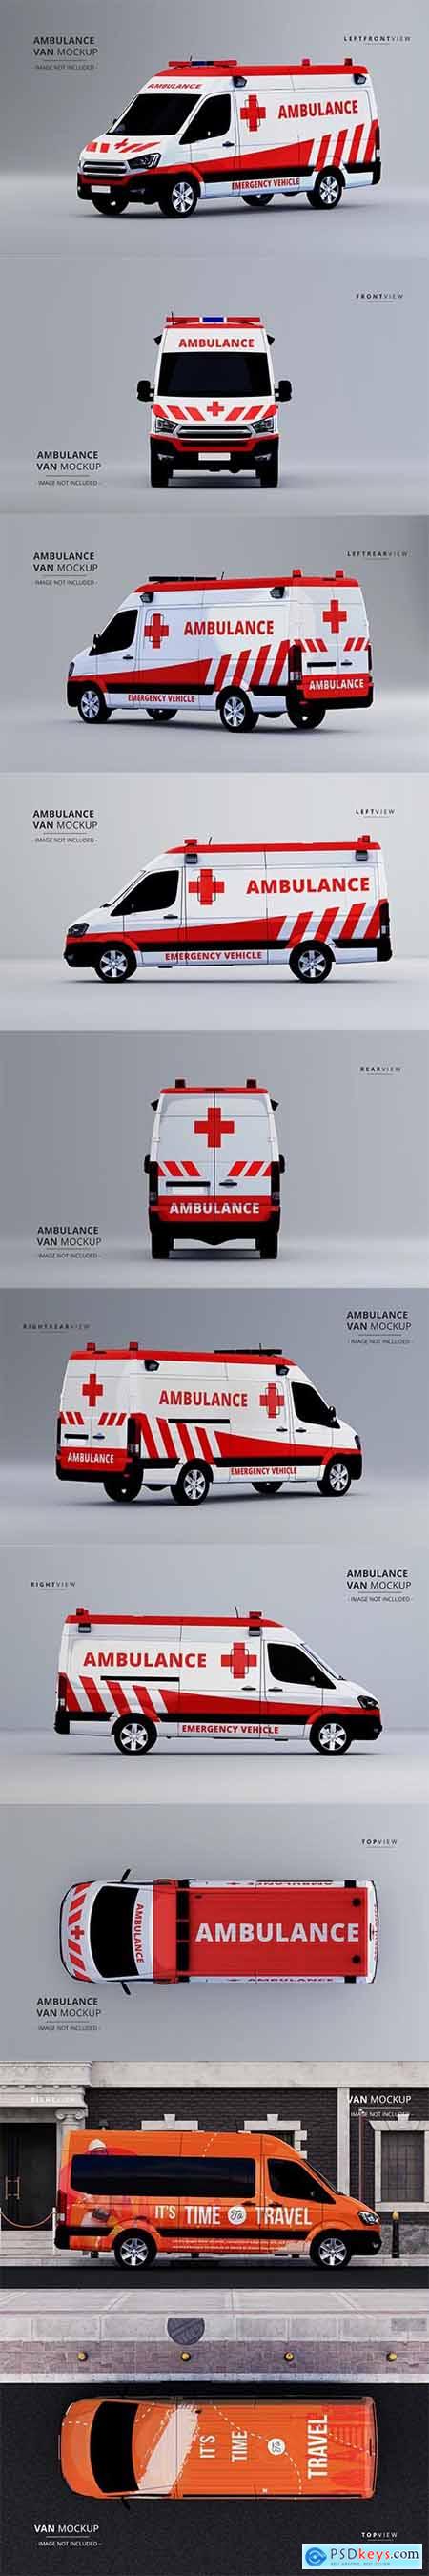 Luxury ambulance van car mockup